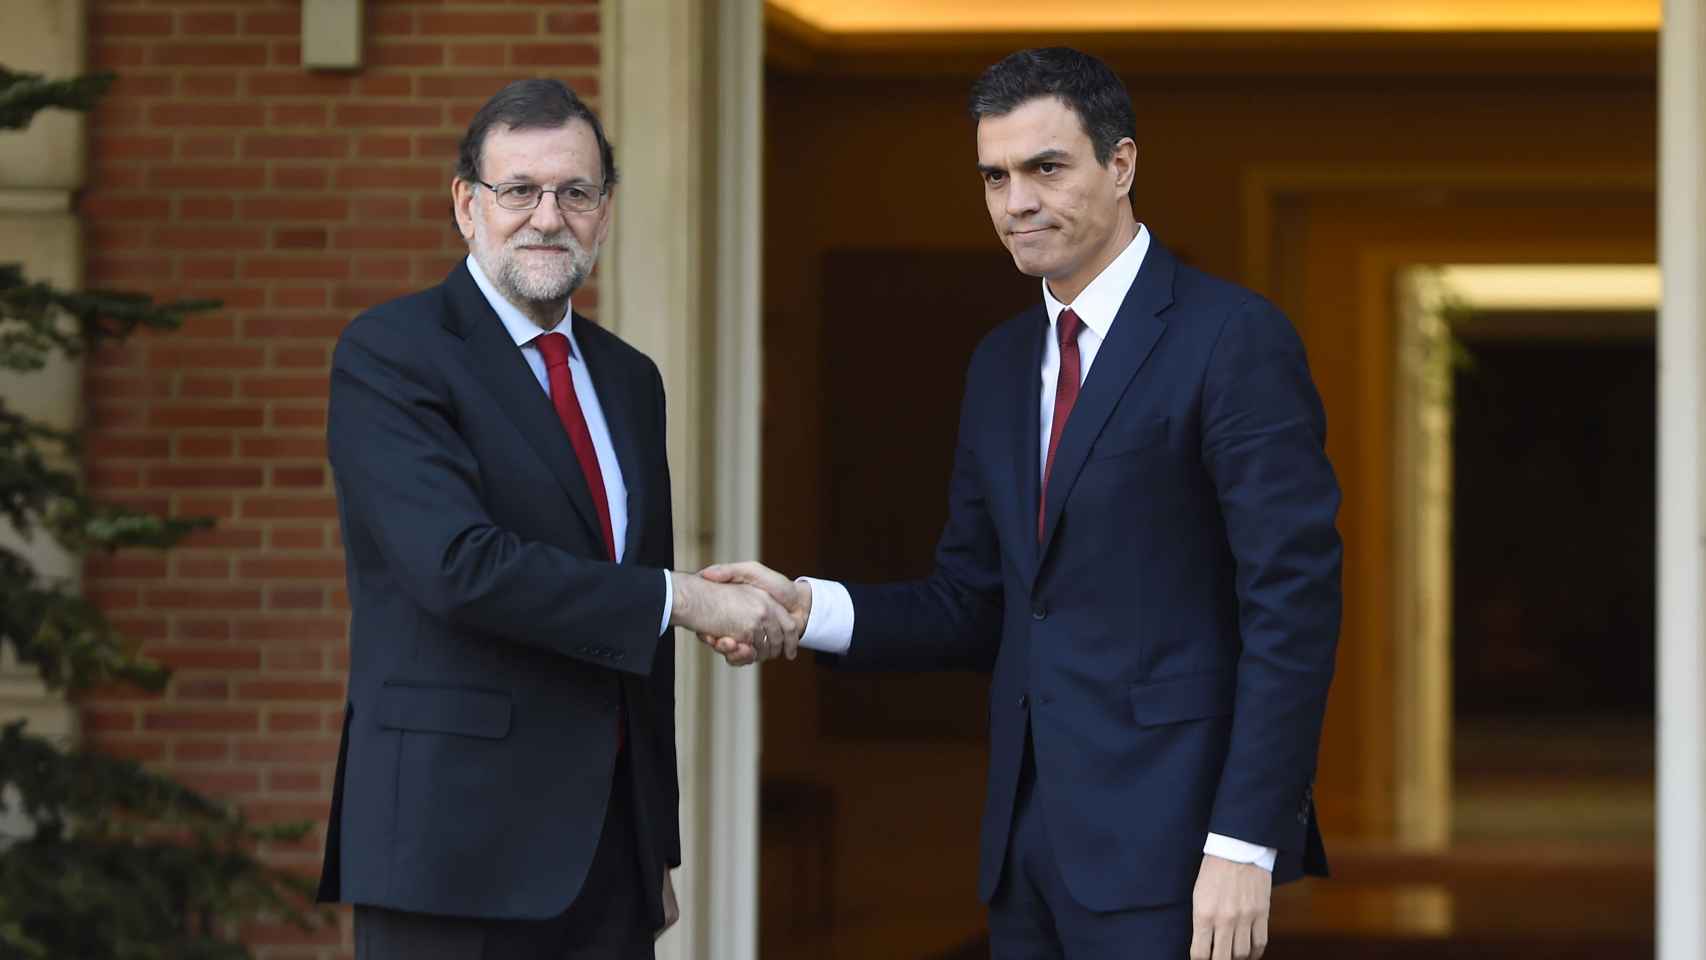 Pedro Sánchez con el traje fetiche en su reunión con Rajoy